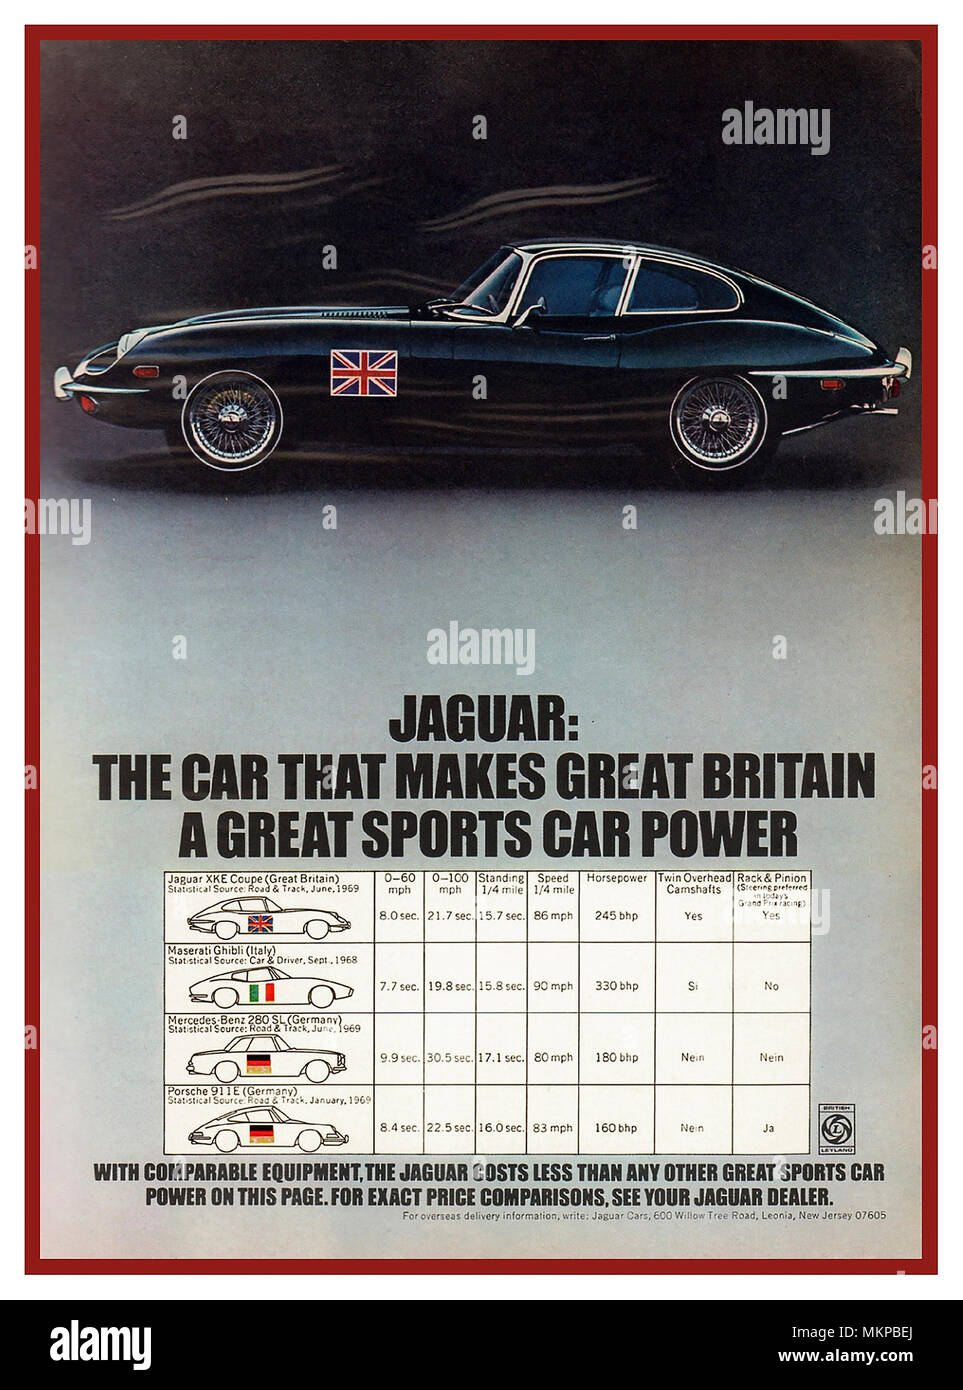 1969 Jaguar Type E coupé publicité presse BMC comparer spécifications Jaguar E-Type avec d'autres voitures de sport 'la voiture qui fait de la Grande-Bretagne une grande voiture de sport power' Banque D'Images